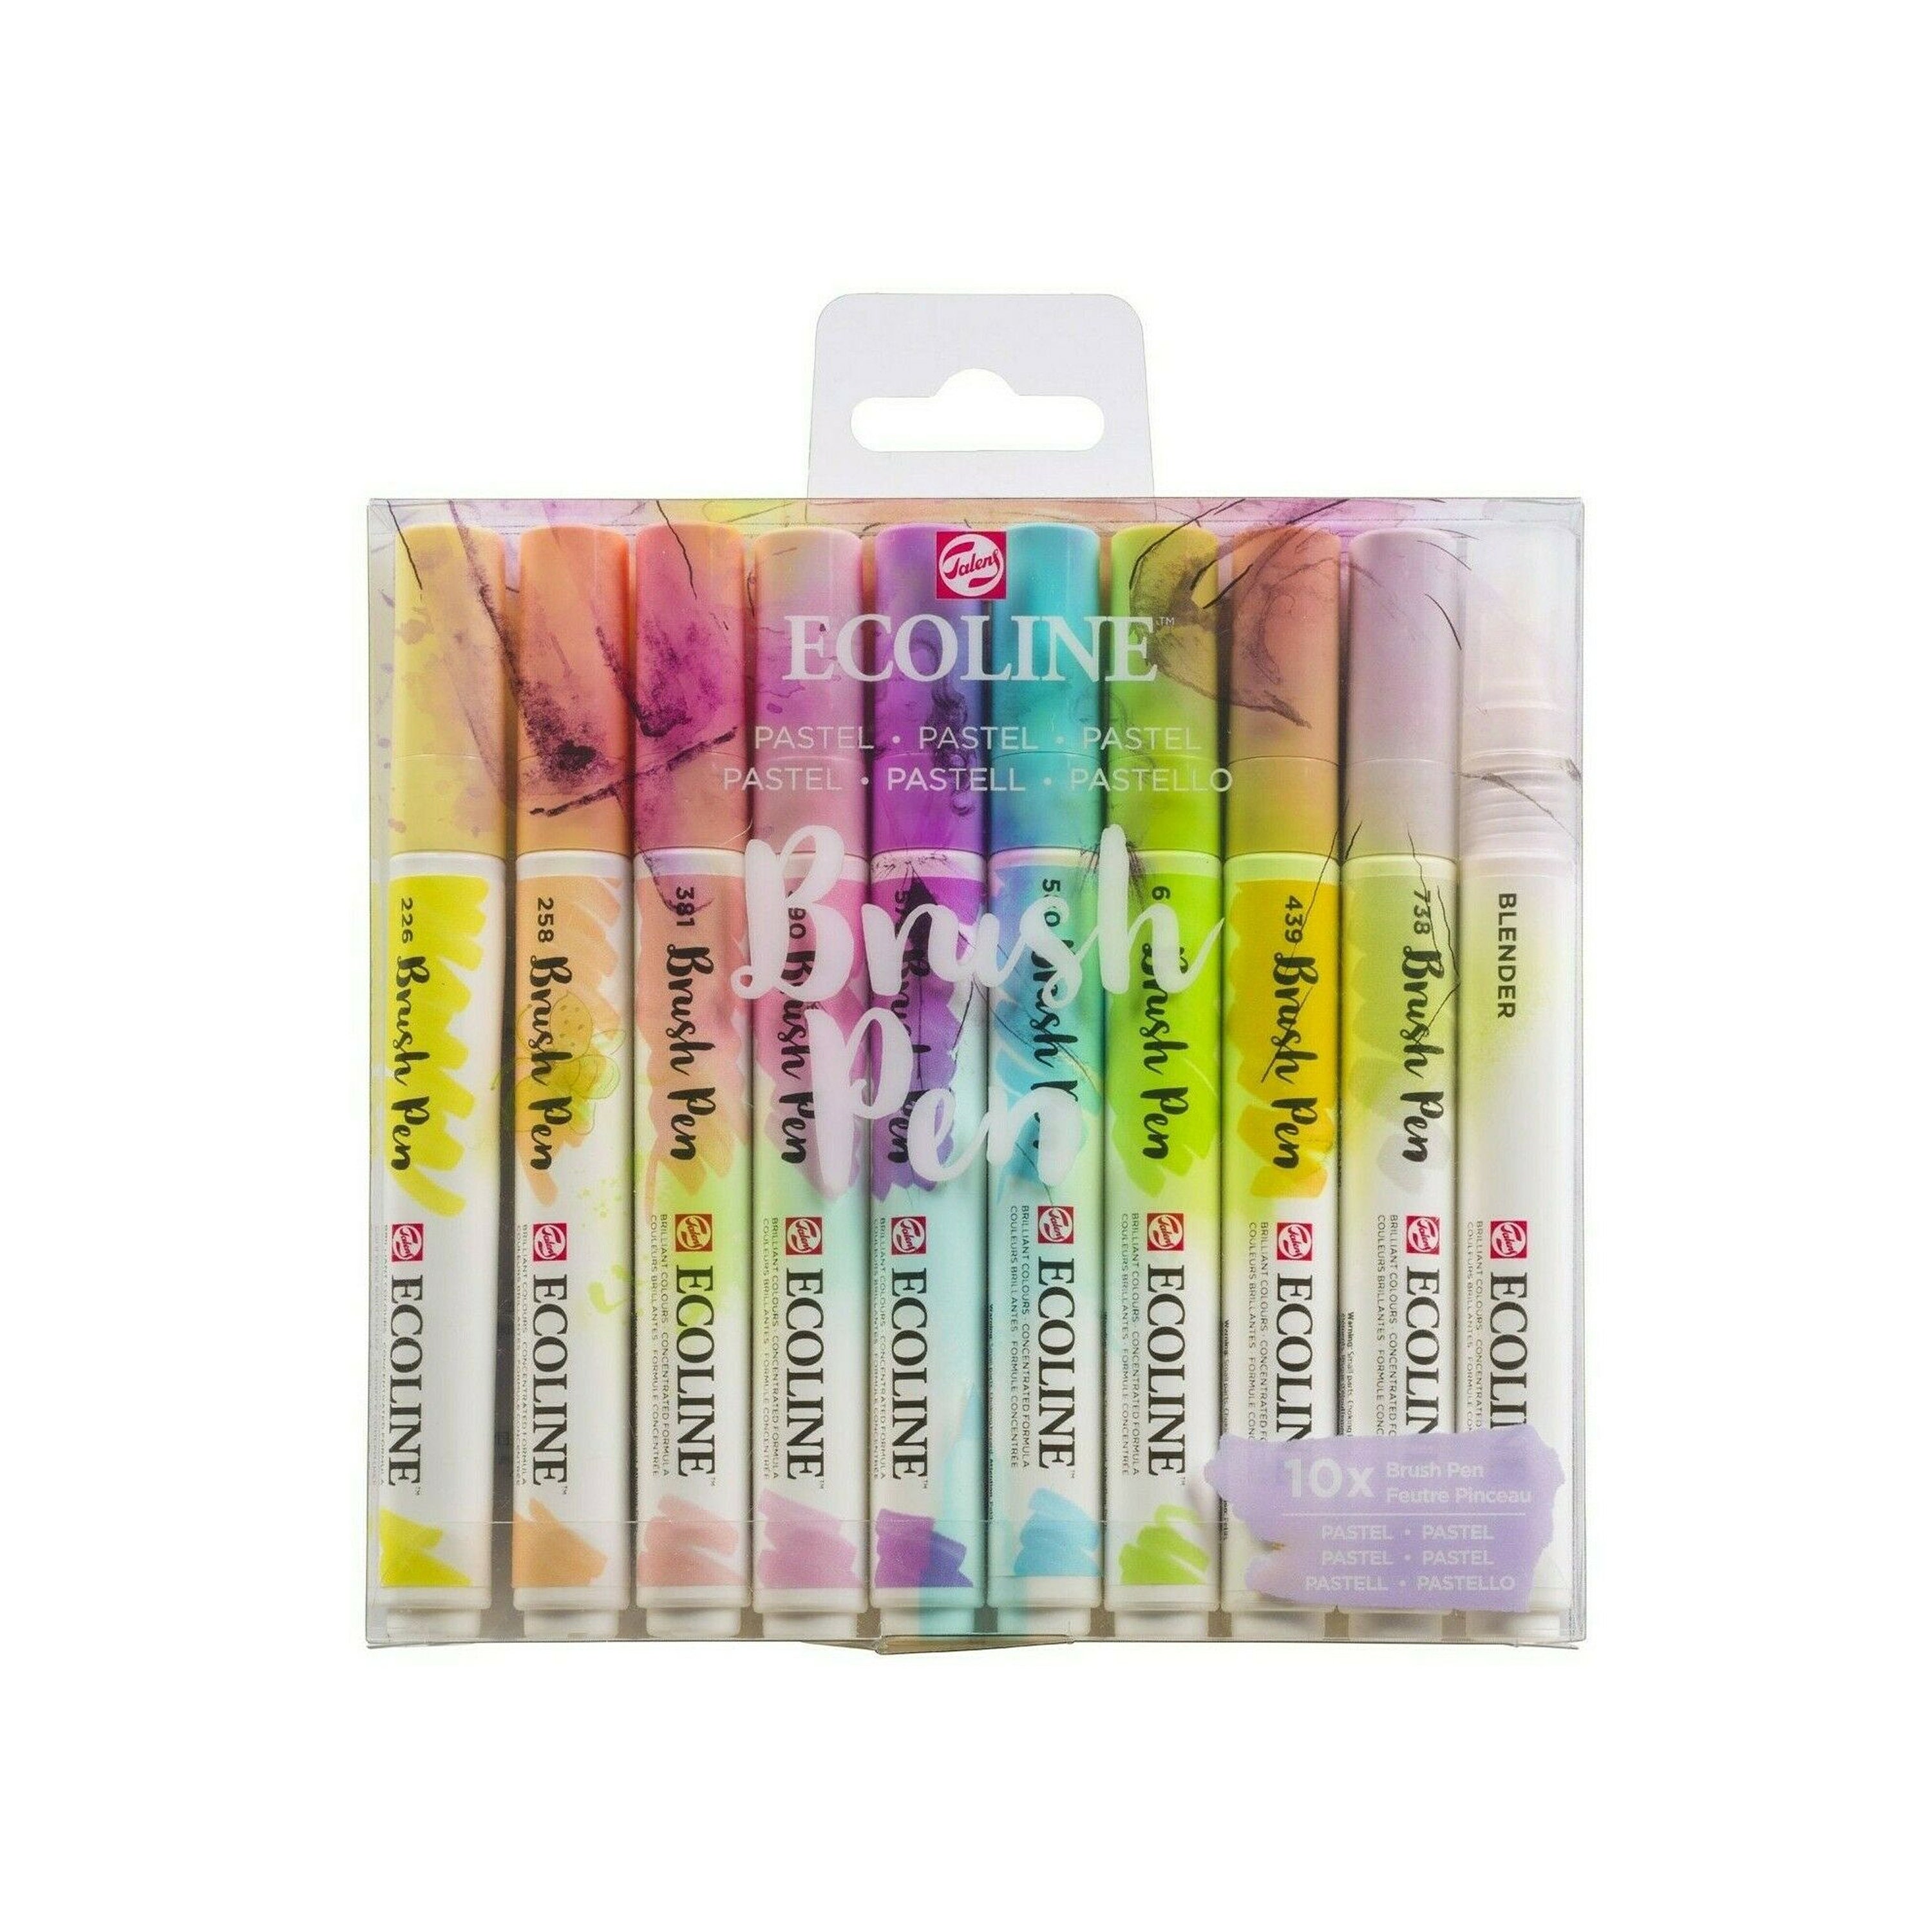 Royal Talens Ecoline Brush Marker Set - Pastel Colors, Set of 5